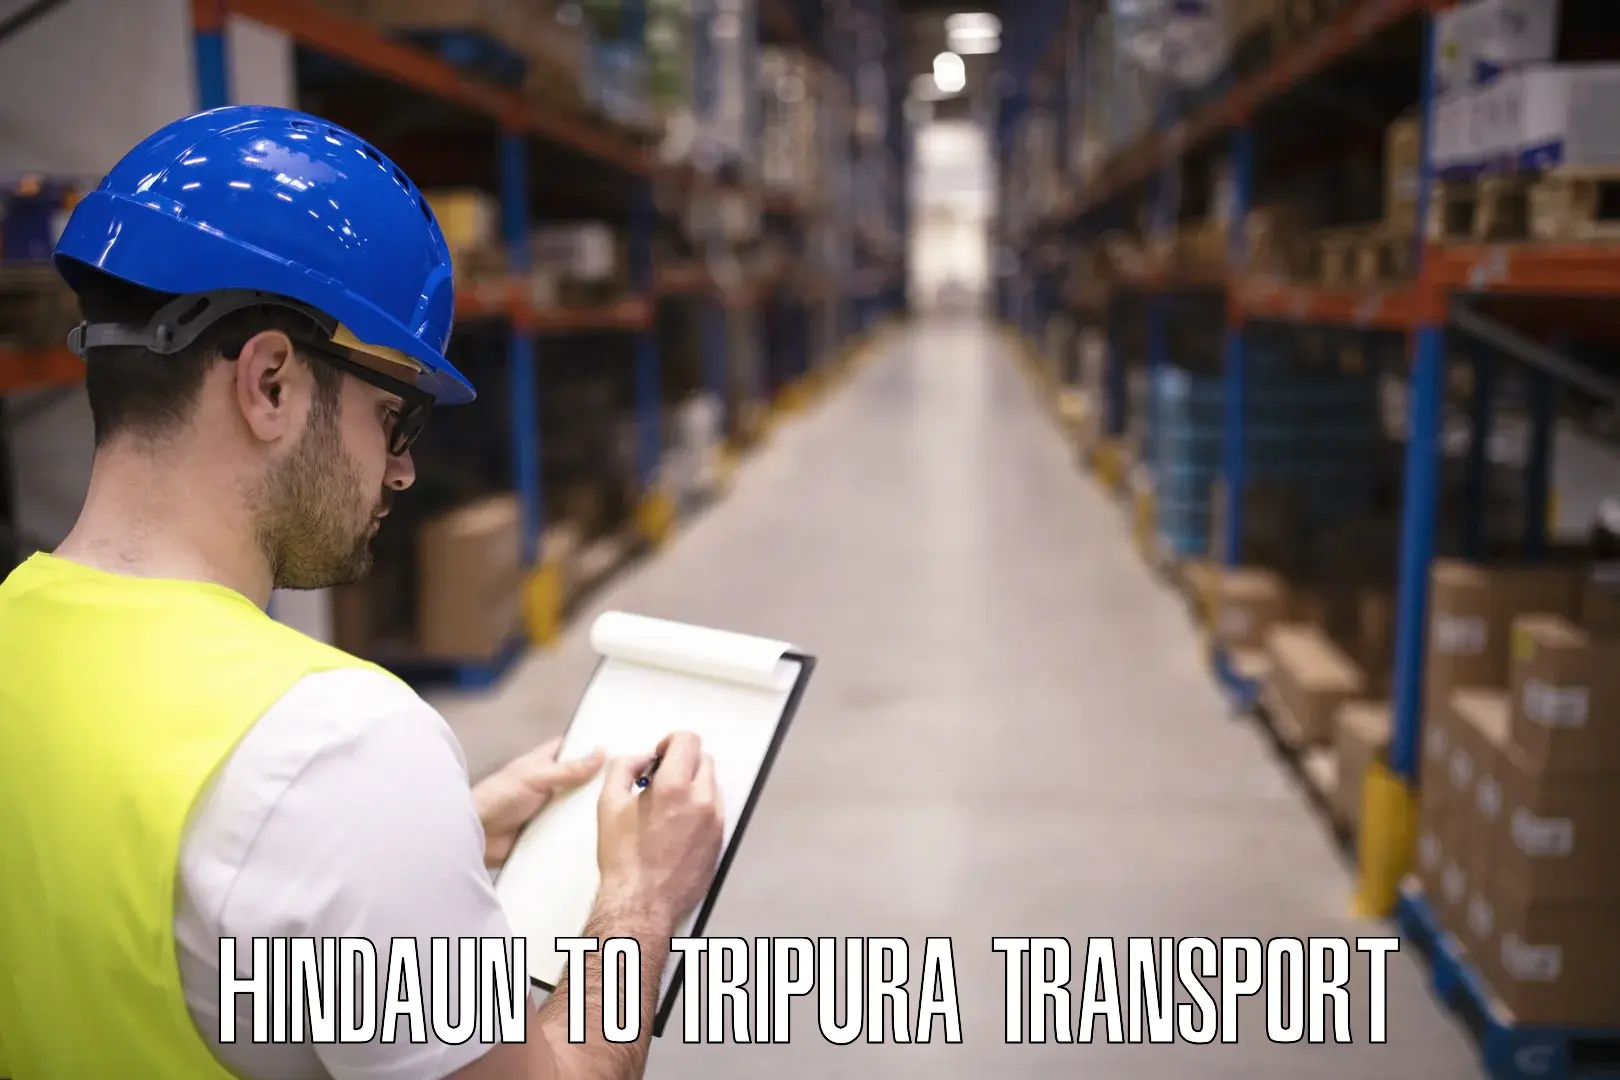 Shipping partner Hindaun to Amarpur